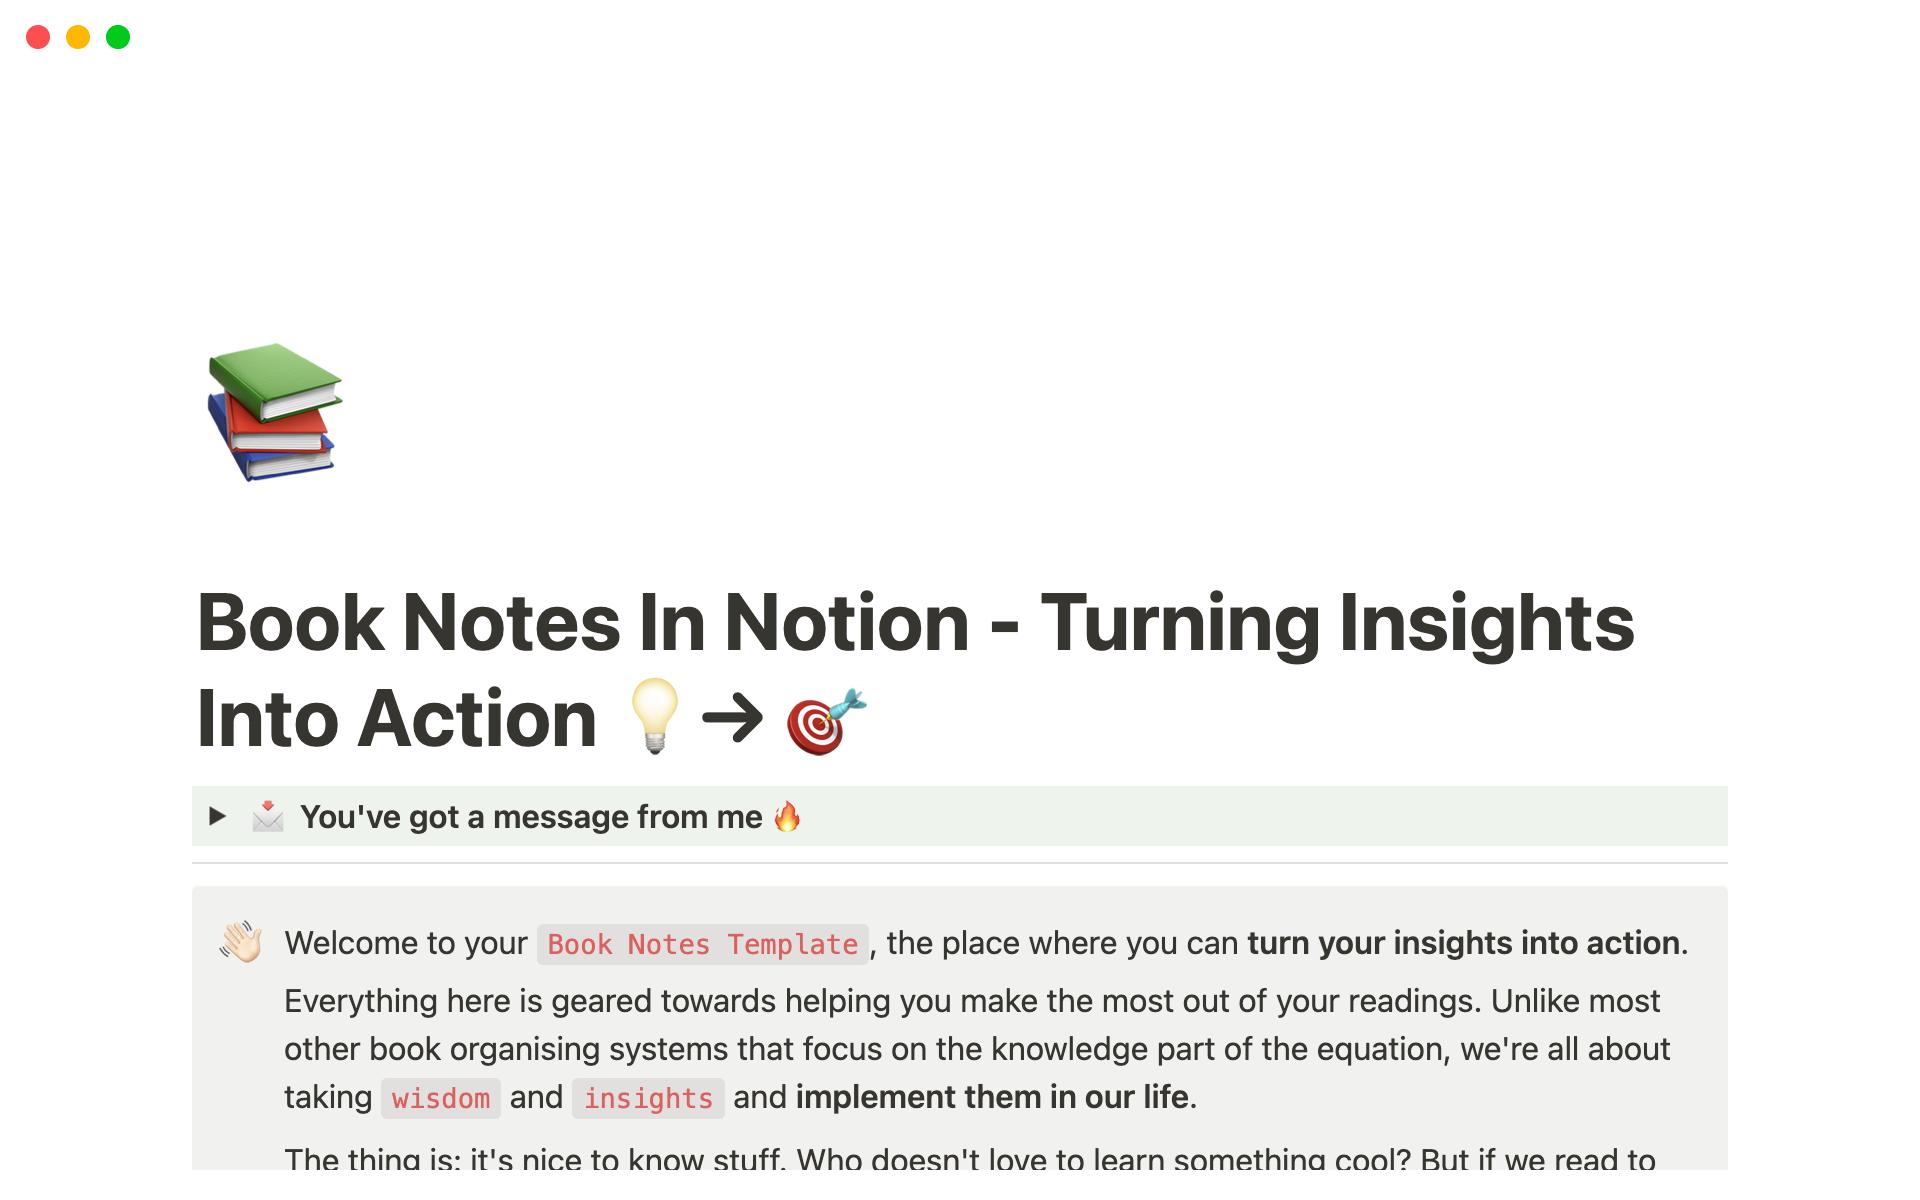 Uma prévia do modelo para Book Notes for Notion